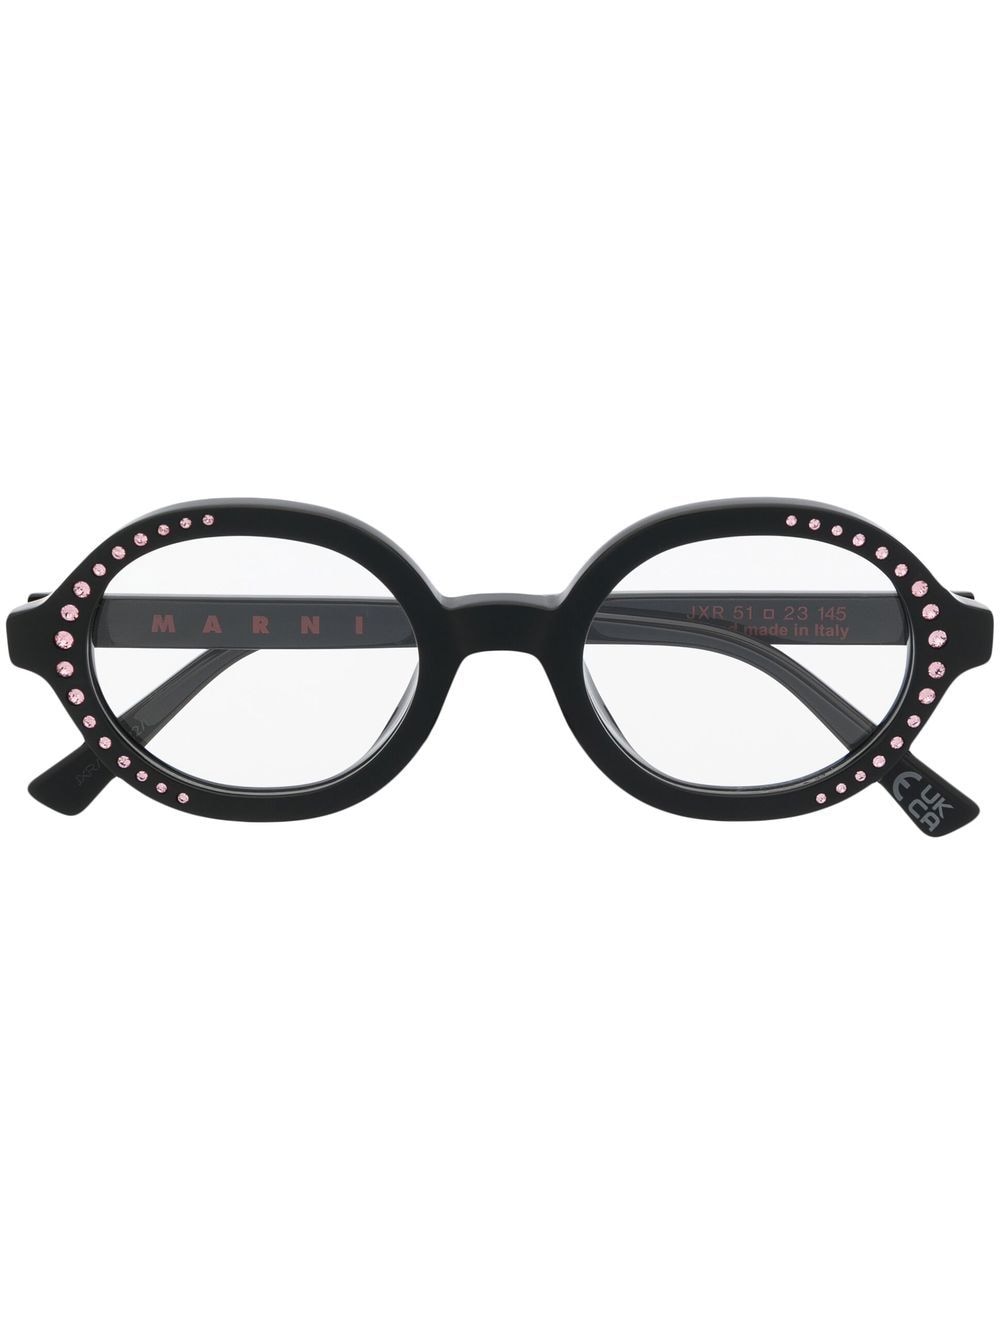 Marni Eyewear JXR Nakagin Brille mit Kristallen - Schwarz von Marni Eyewear